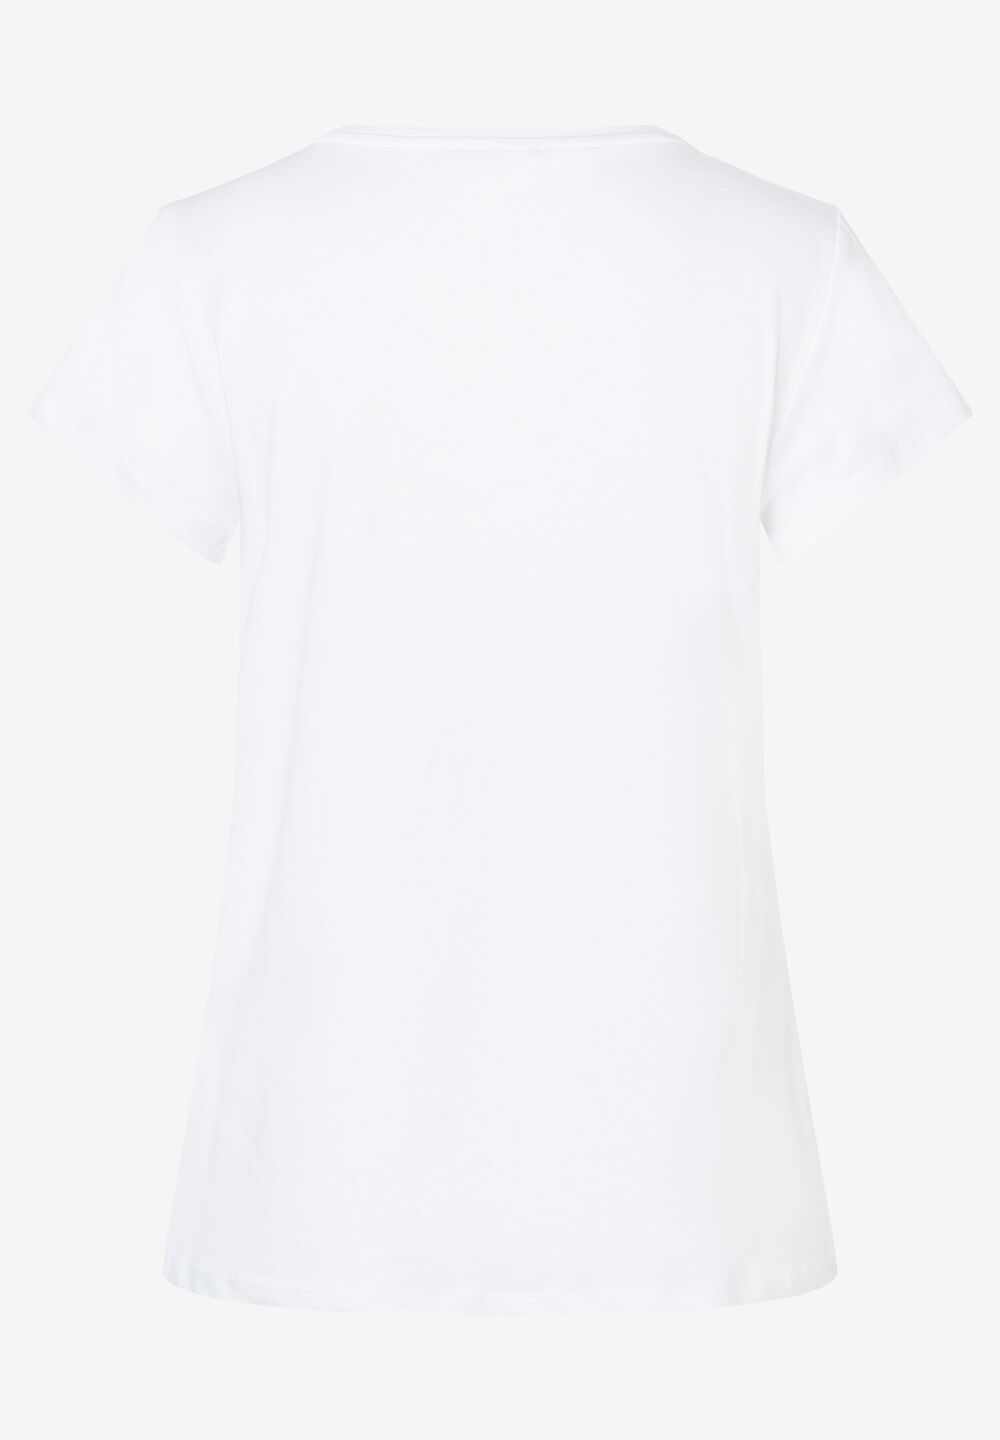 T-Shirt mit Frontprint, Sommer-Kollektion, weissDetailansicht 1